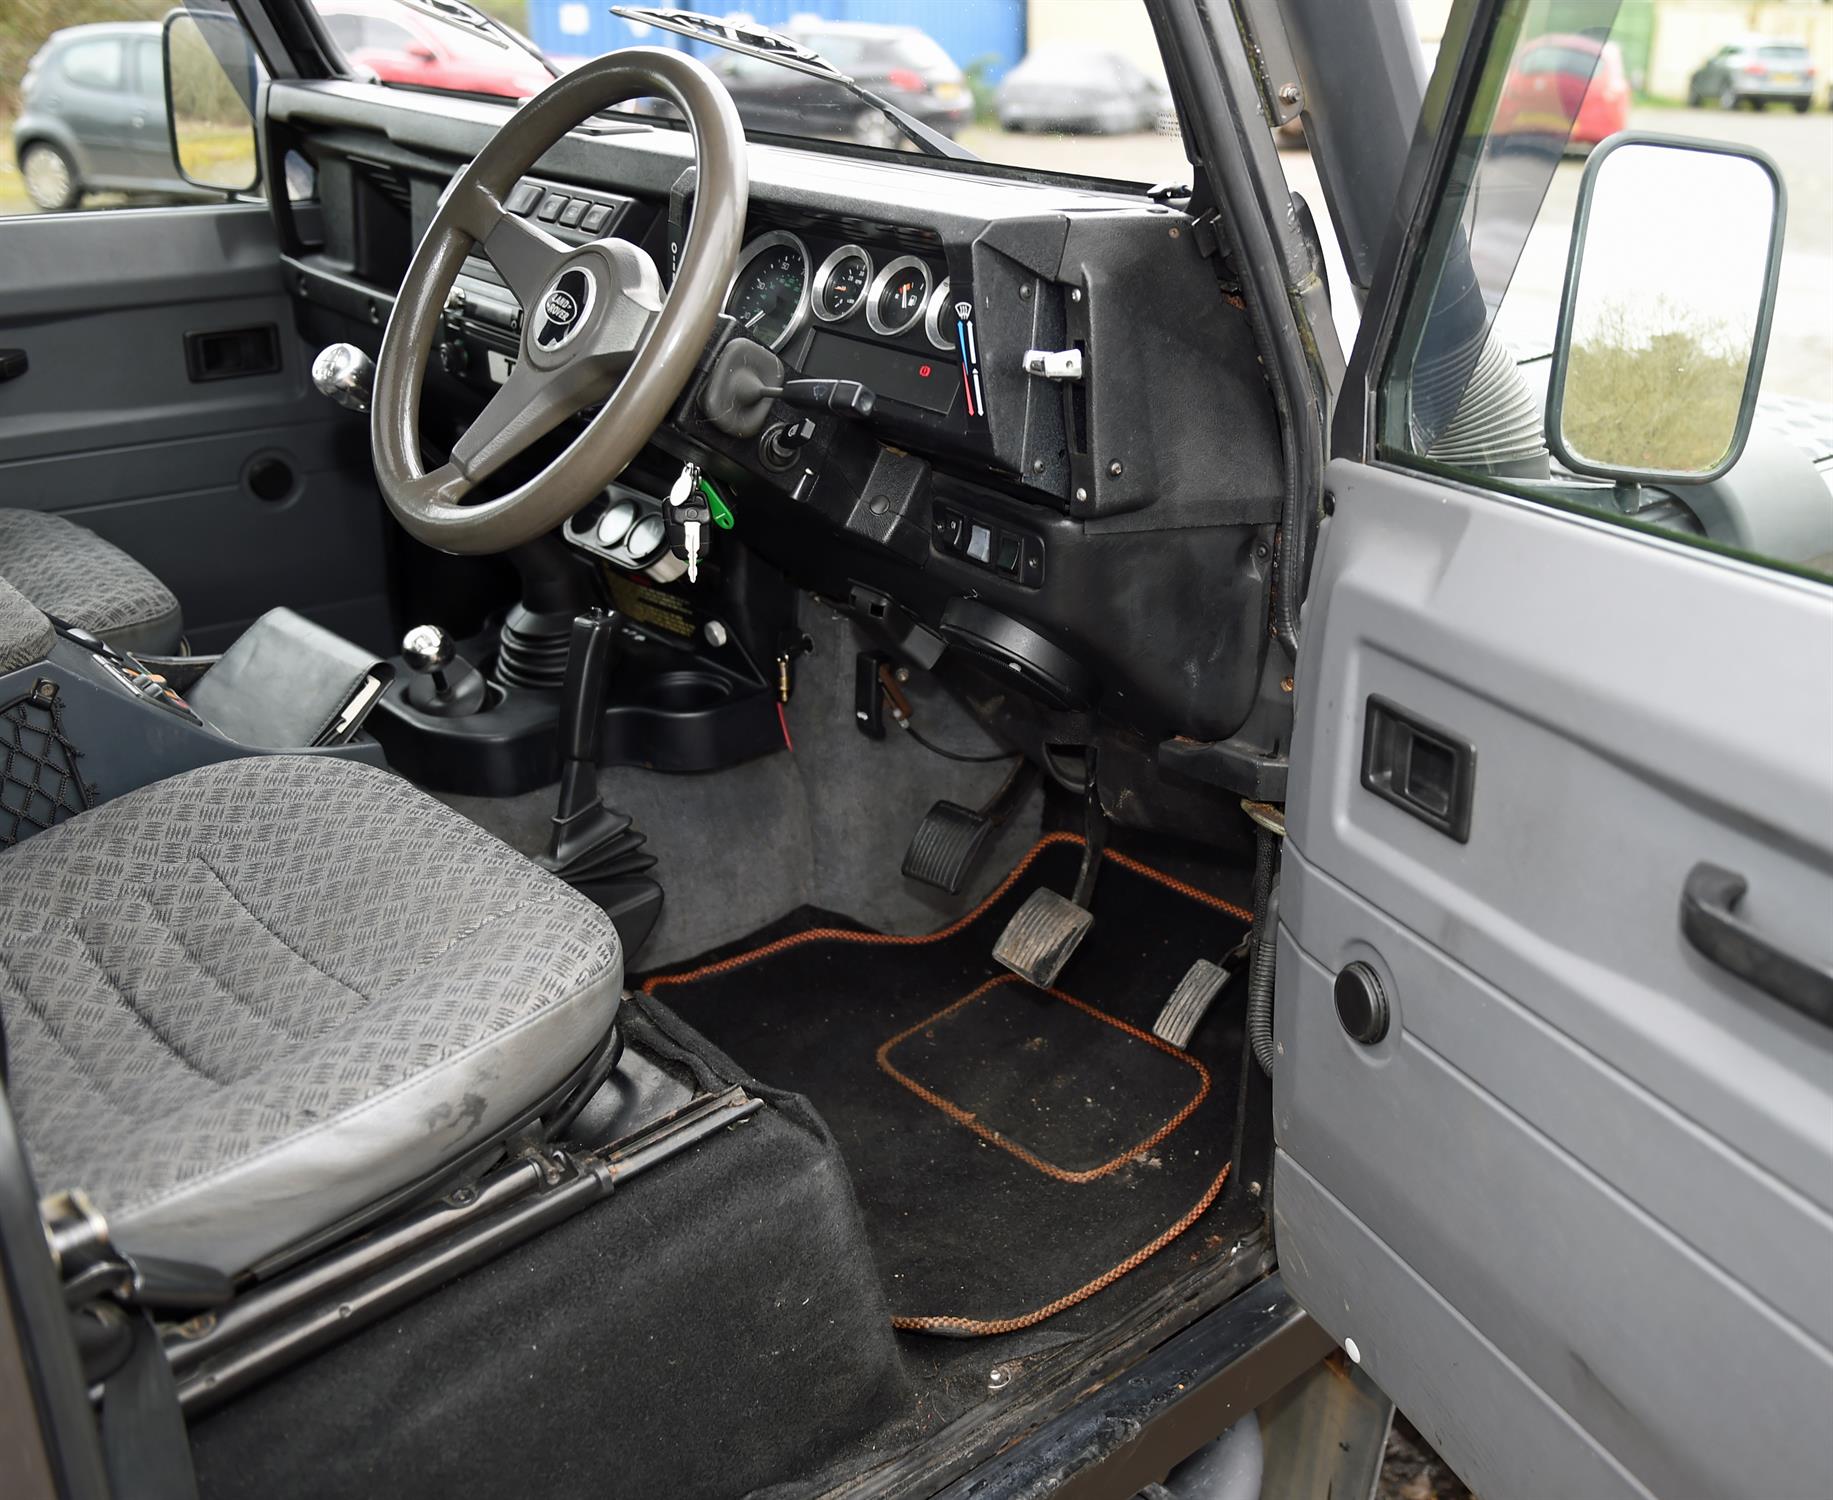 1999 Land Rover Defender 2.5 110 Diesel County TD5 5 Speed Manual. Registration number: V291 KEC. - Image 6 of 16